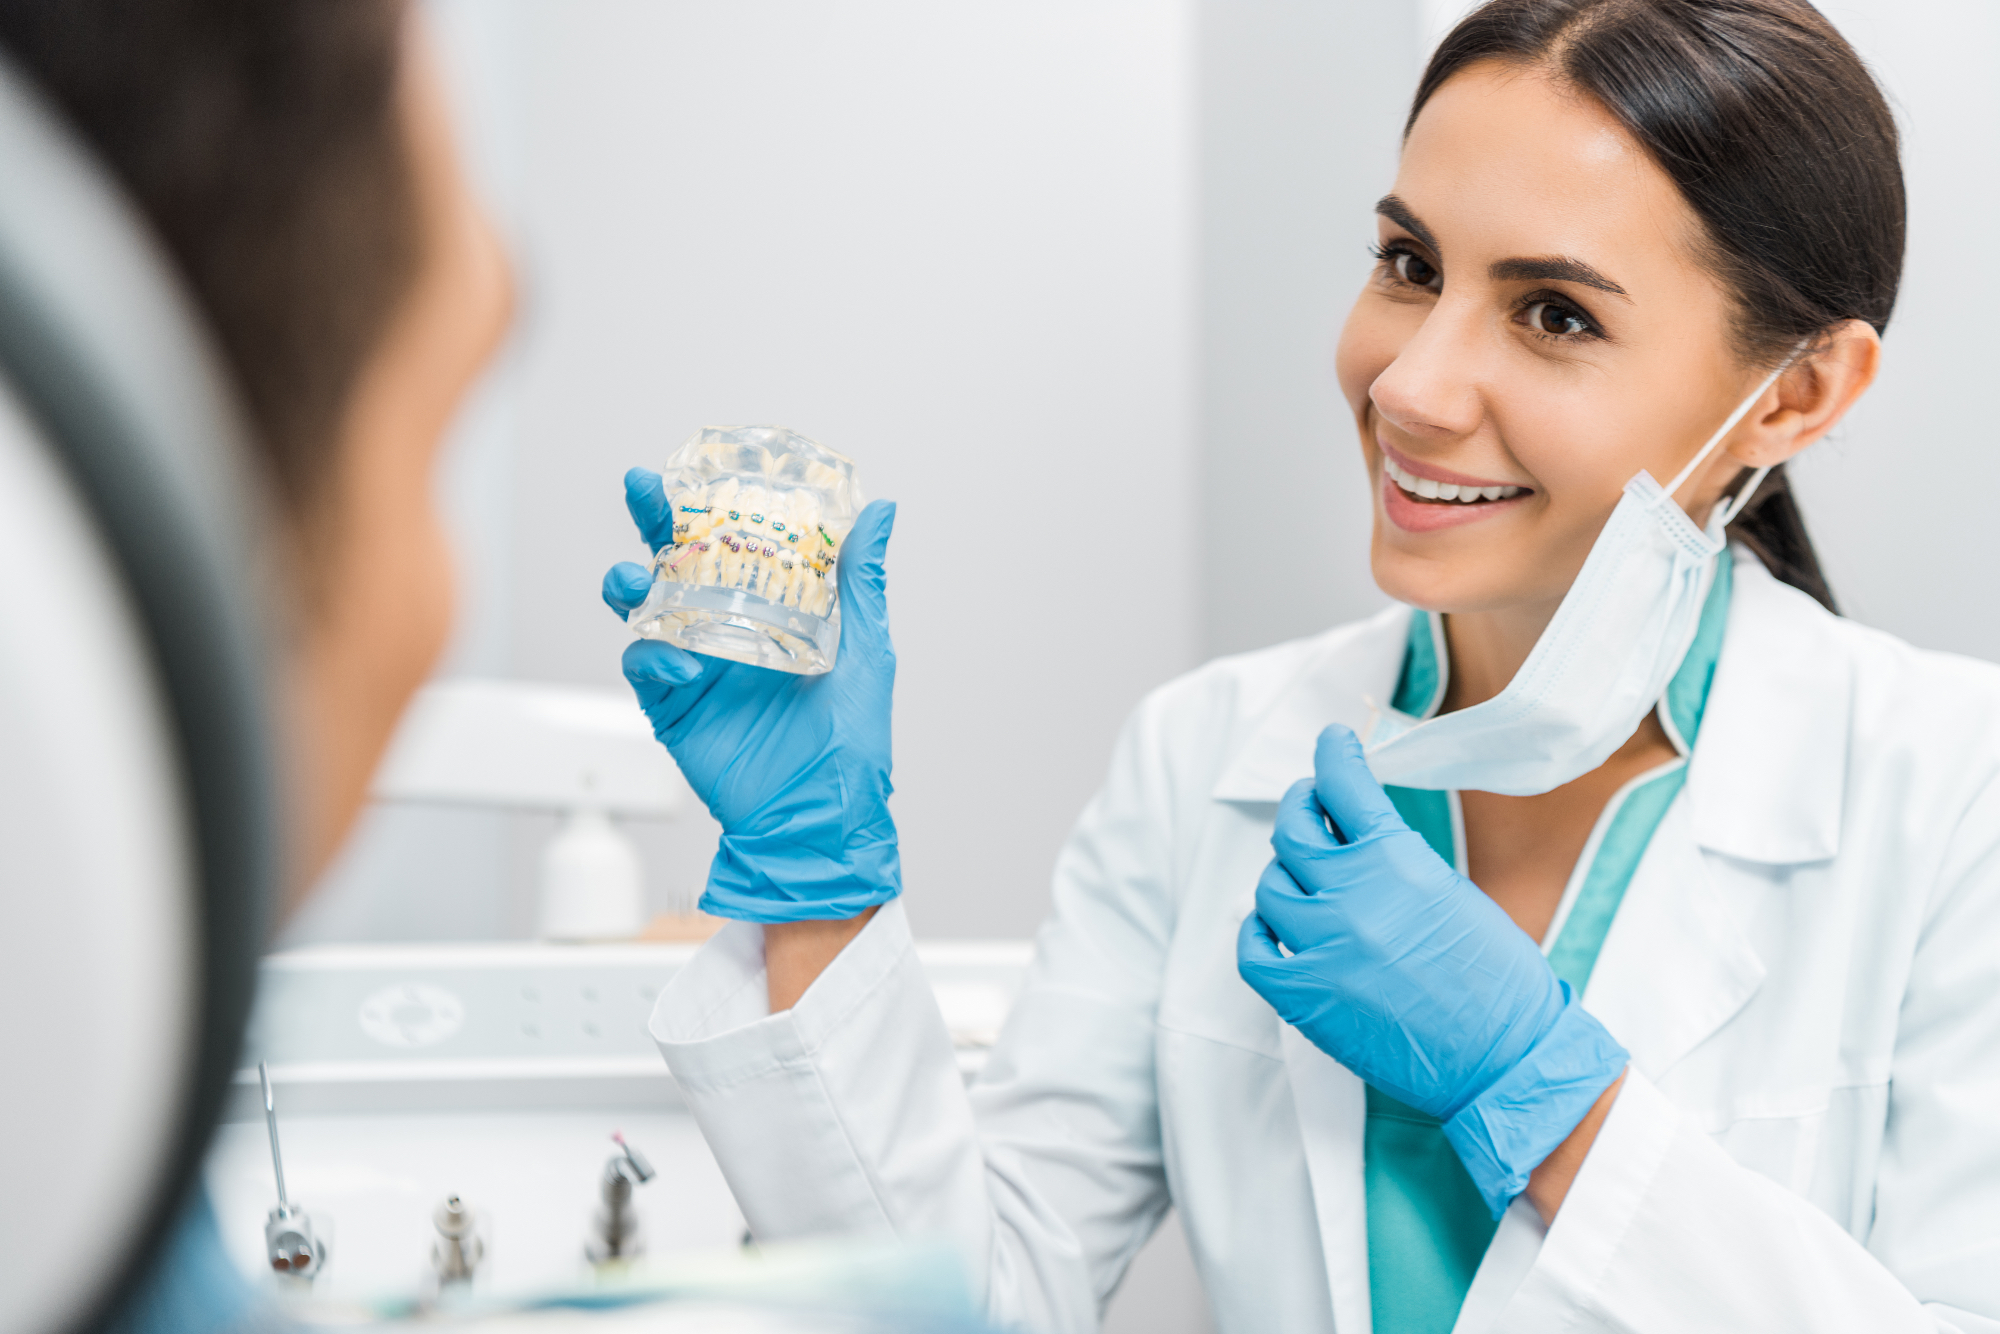 Ortodont Ljubljana vabi na prvi brezplačni pregled